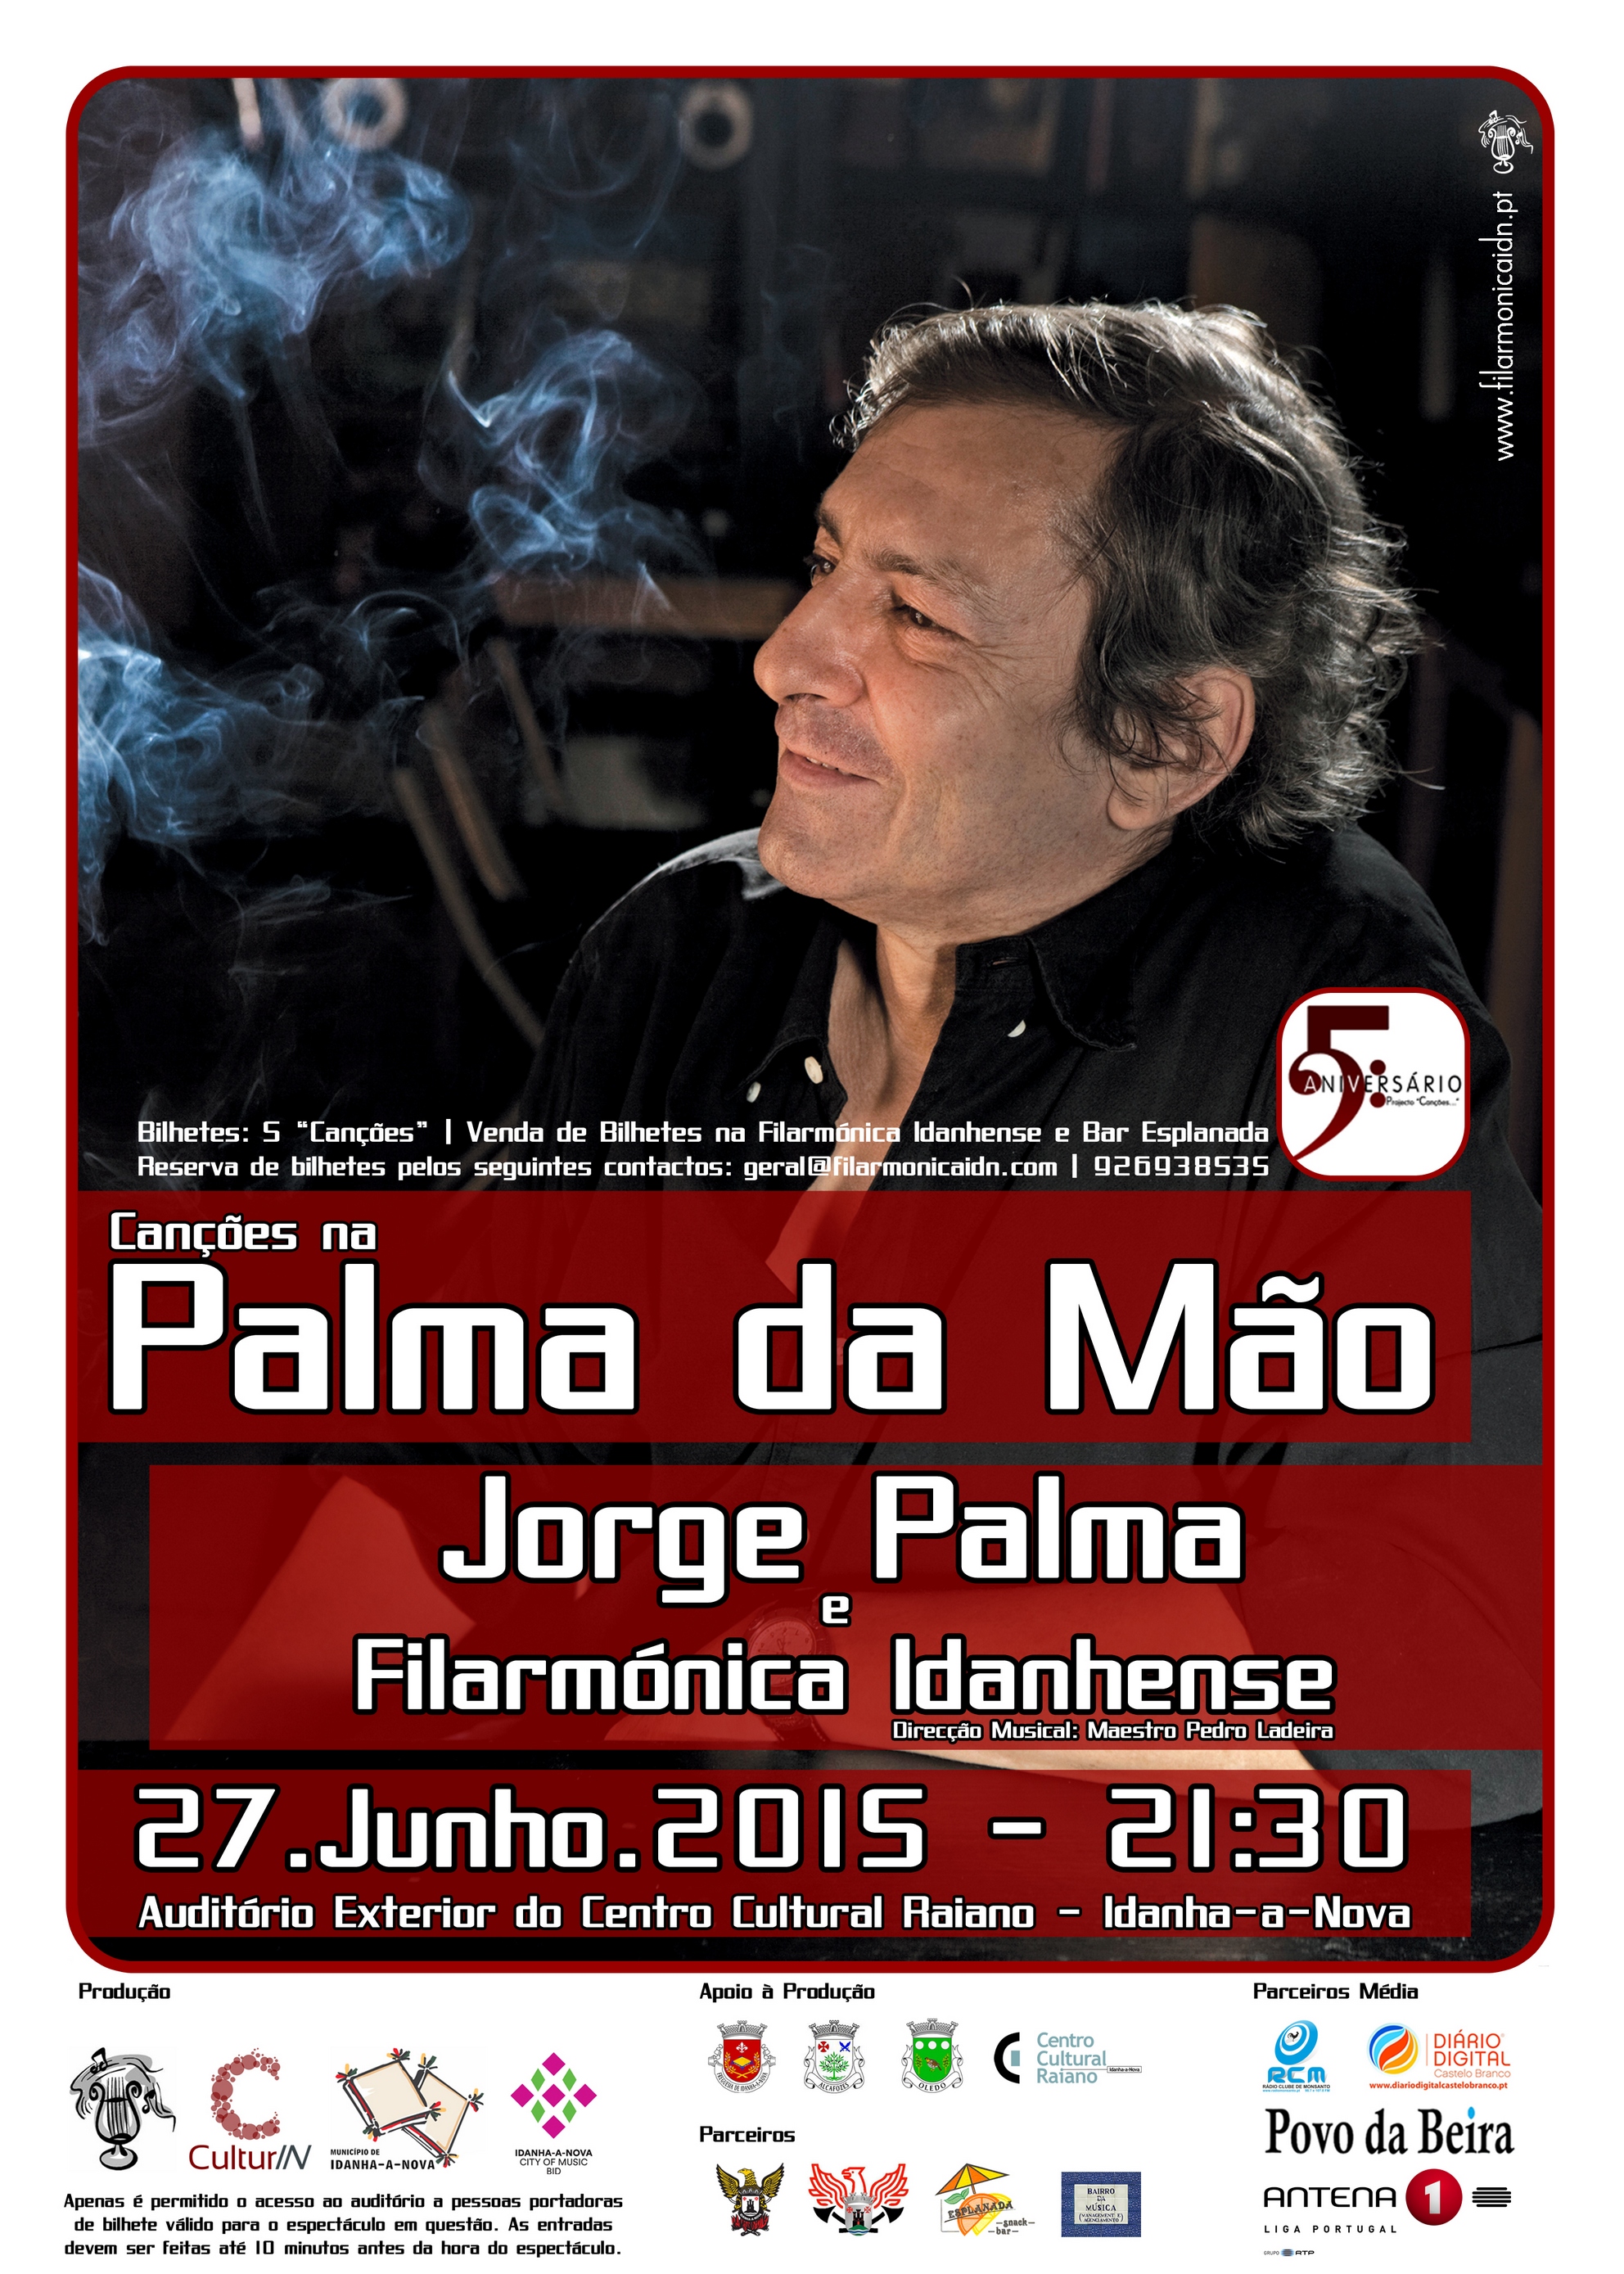 Idanha-a-Nova: Jorge Palma e Filarmónica juntos este sábado em concerto